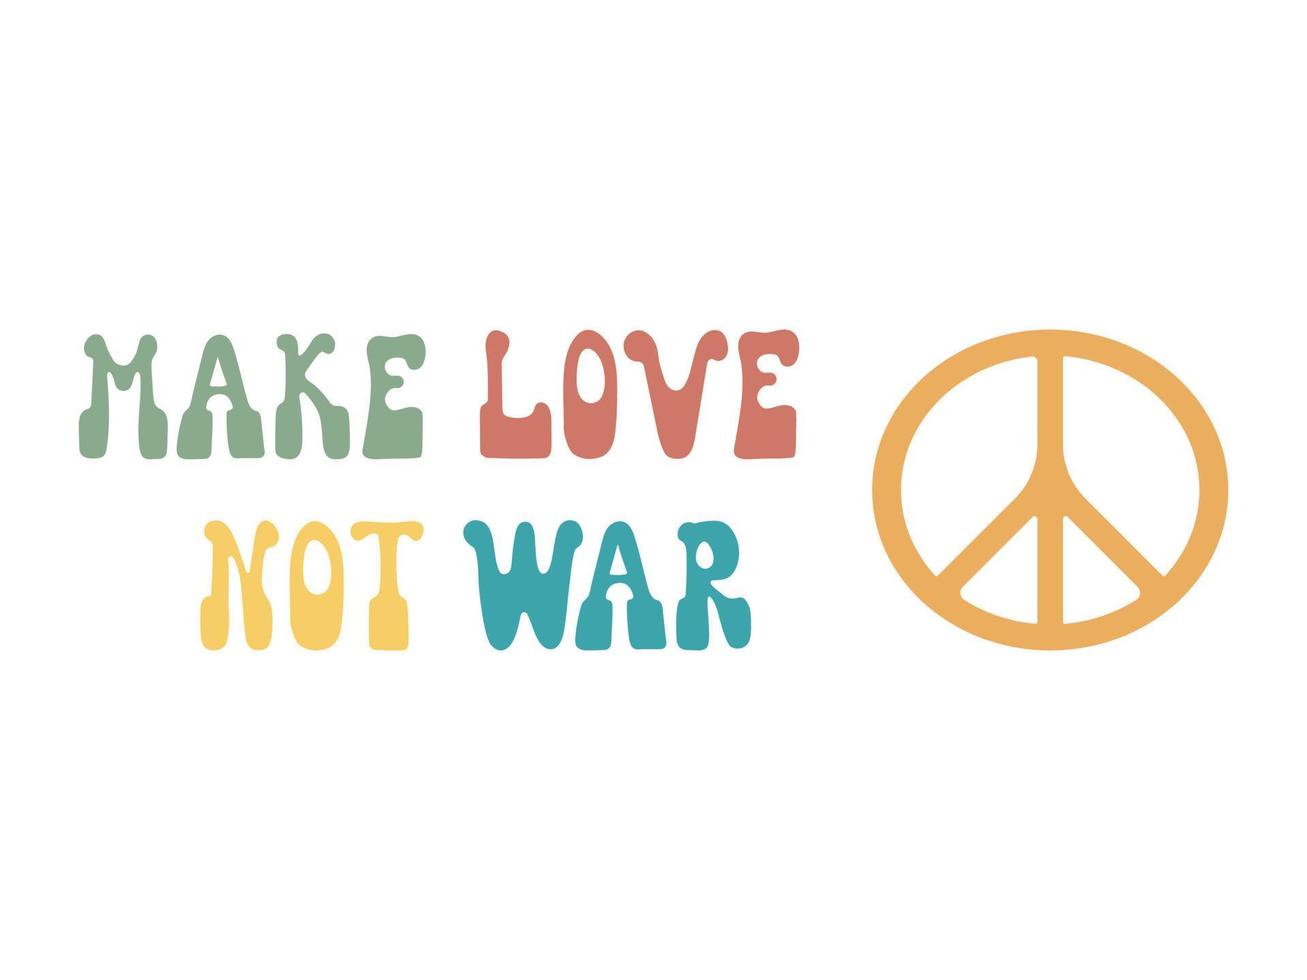 ilustración colorida haz el amor y no la guerra en estilo hippie retro de los años 70. linda impresión gráfica para camisetas, carteles, diseño de tarjetas. vector